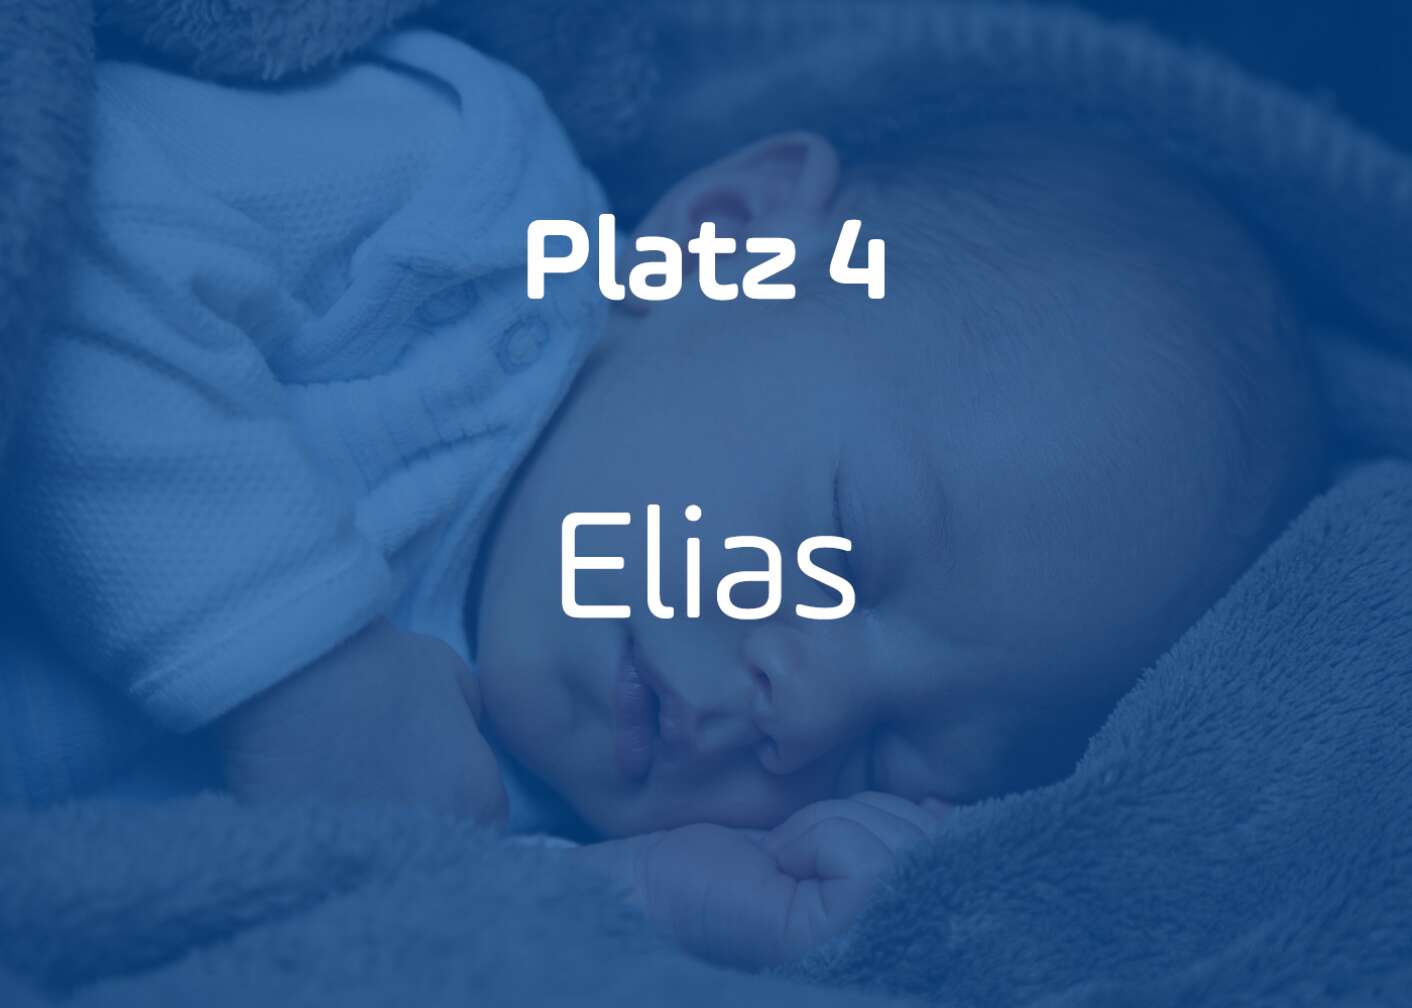 Elias Platz 4